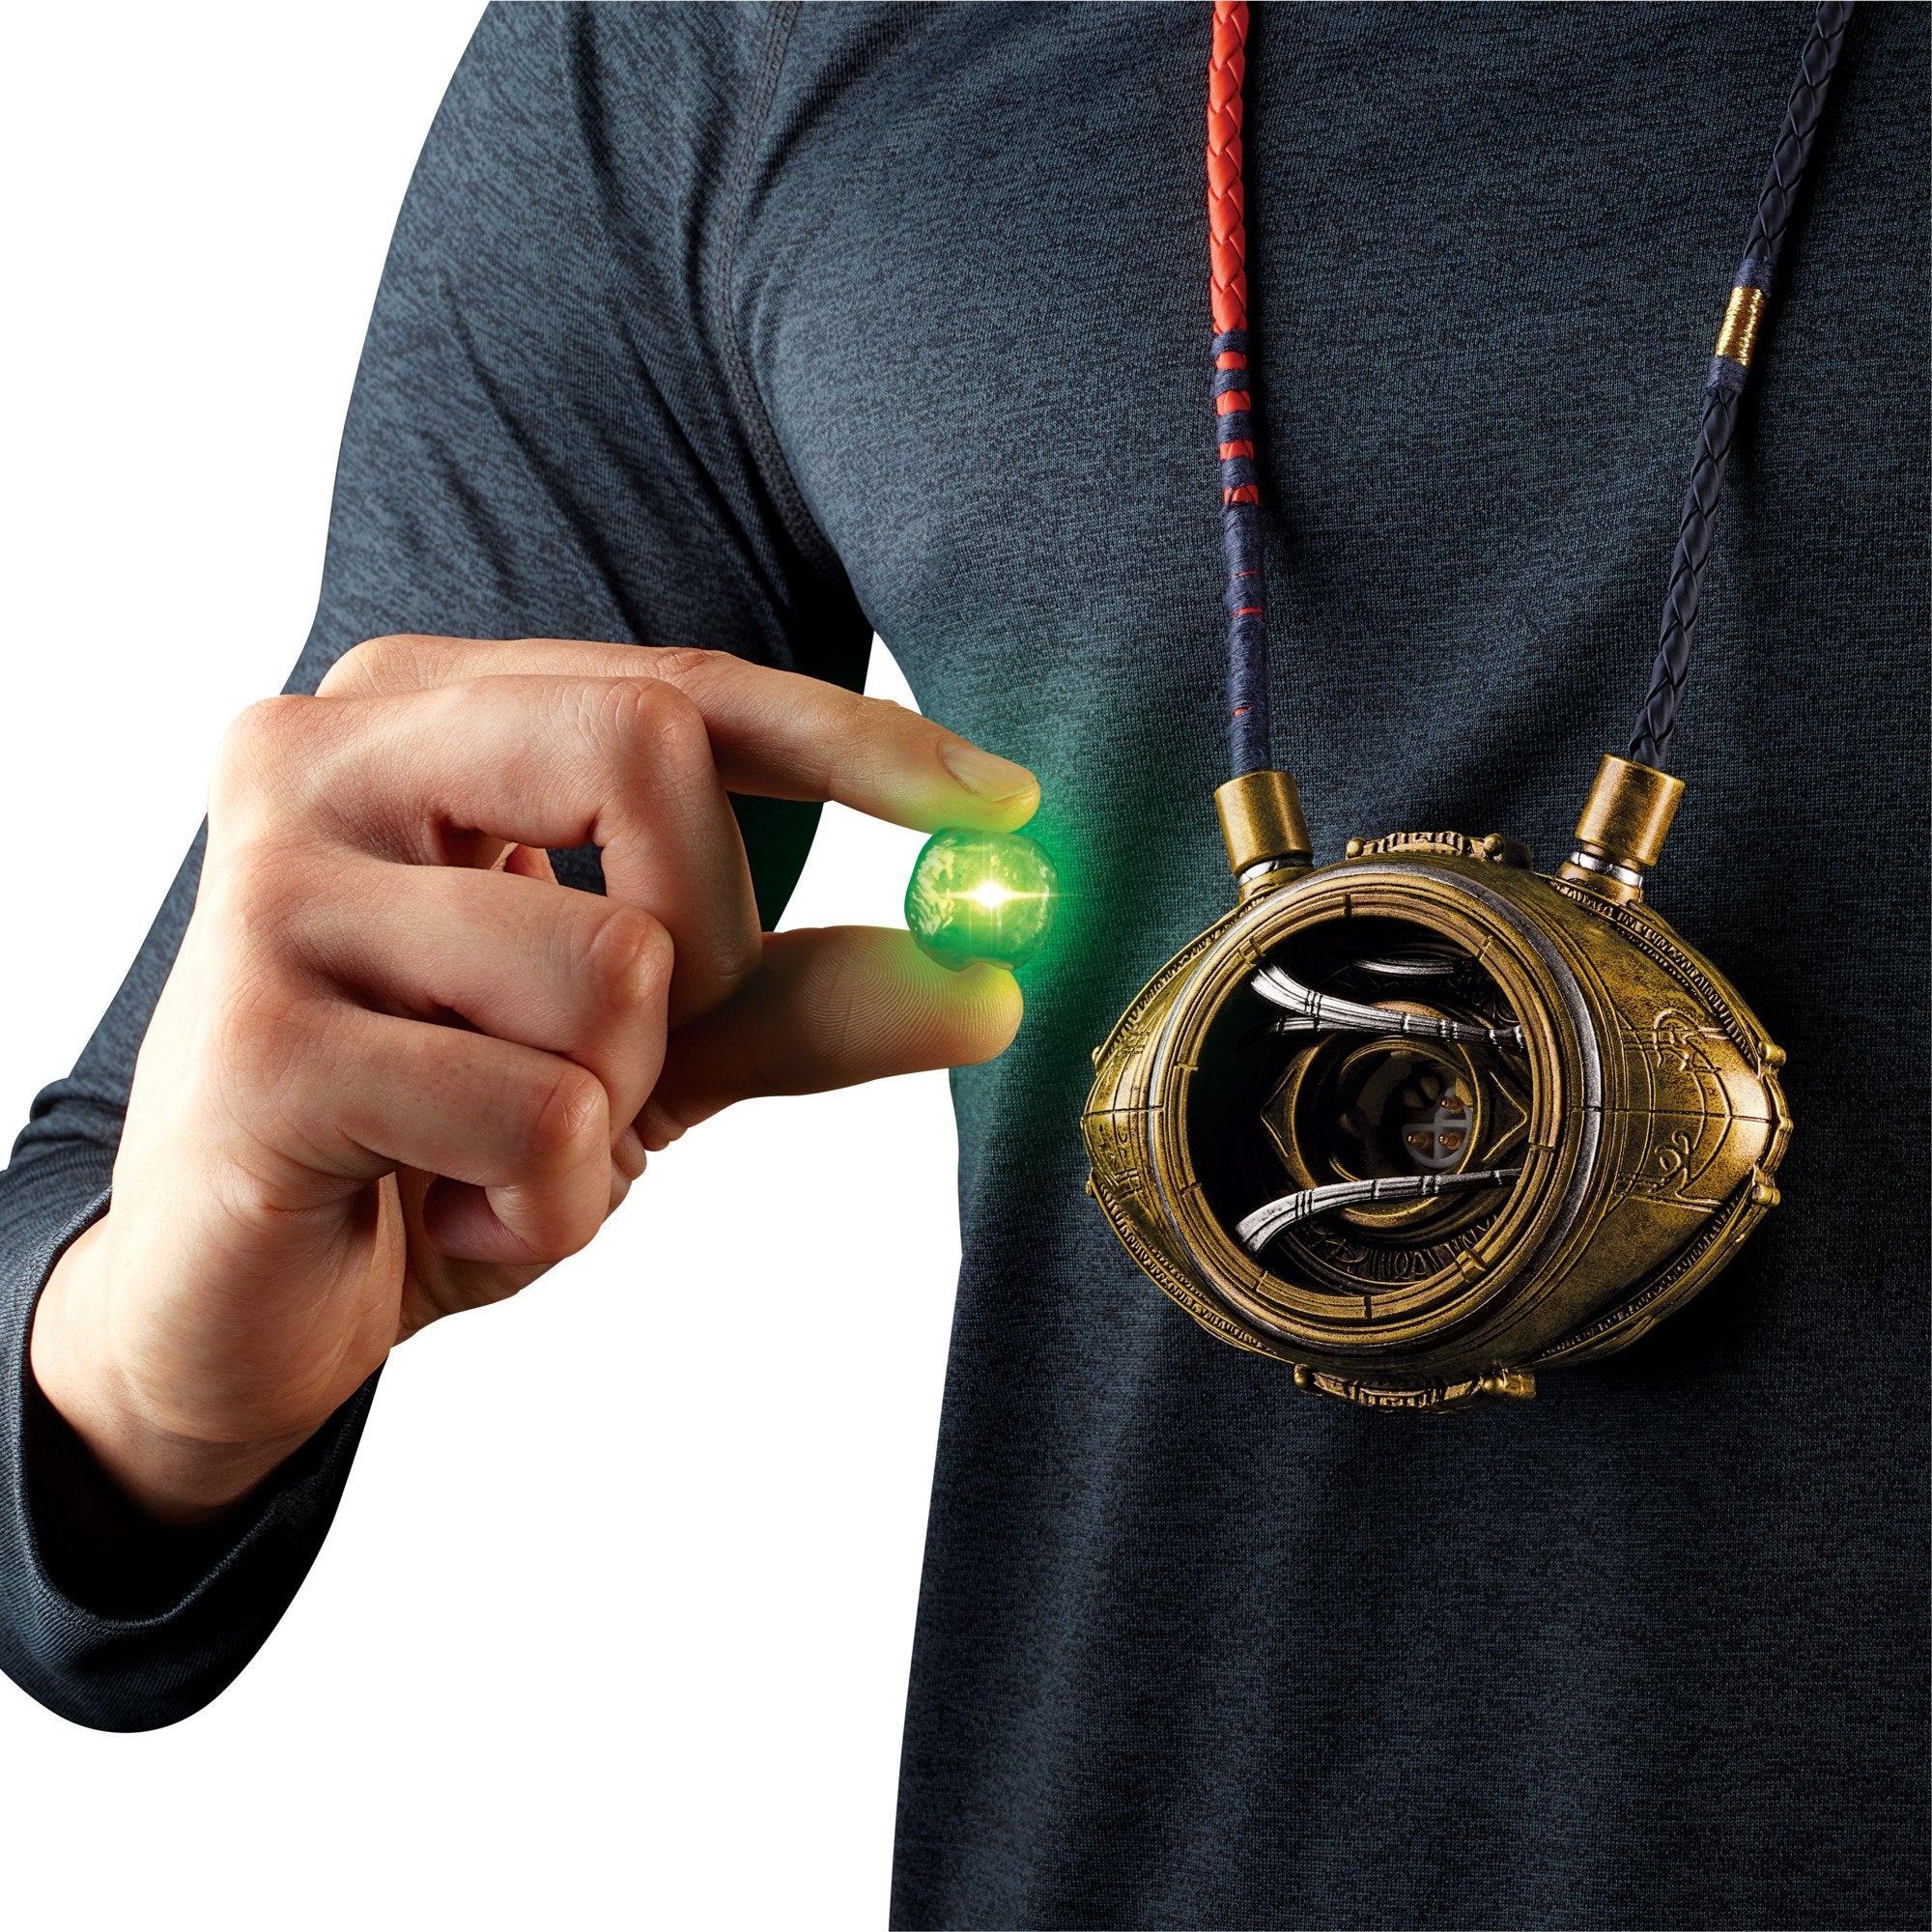 Hasbro - Marvel Legends - Doctor Strange - Eye of Agamotto - Marvelous Toys